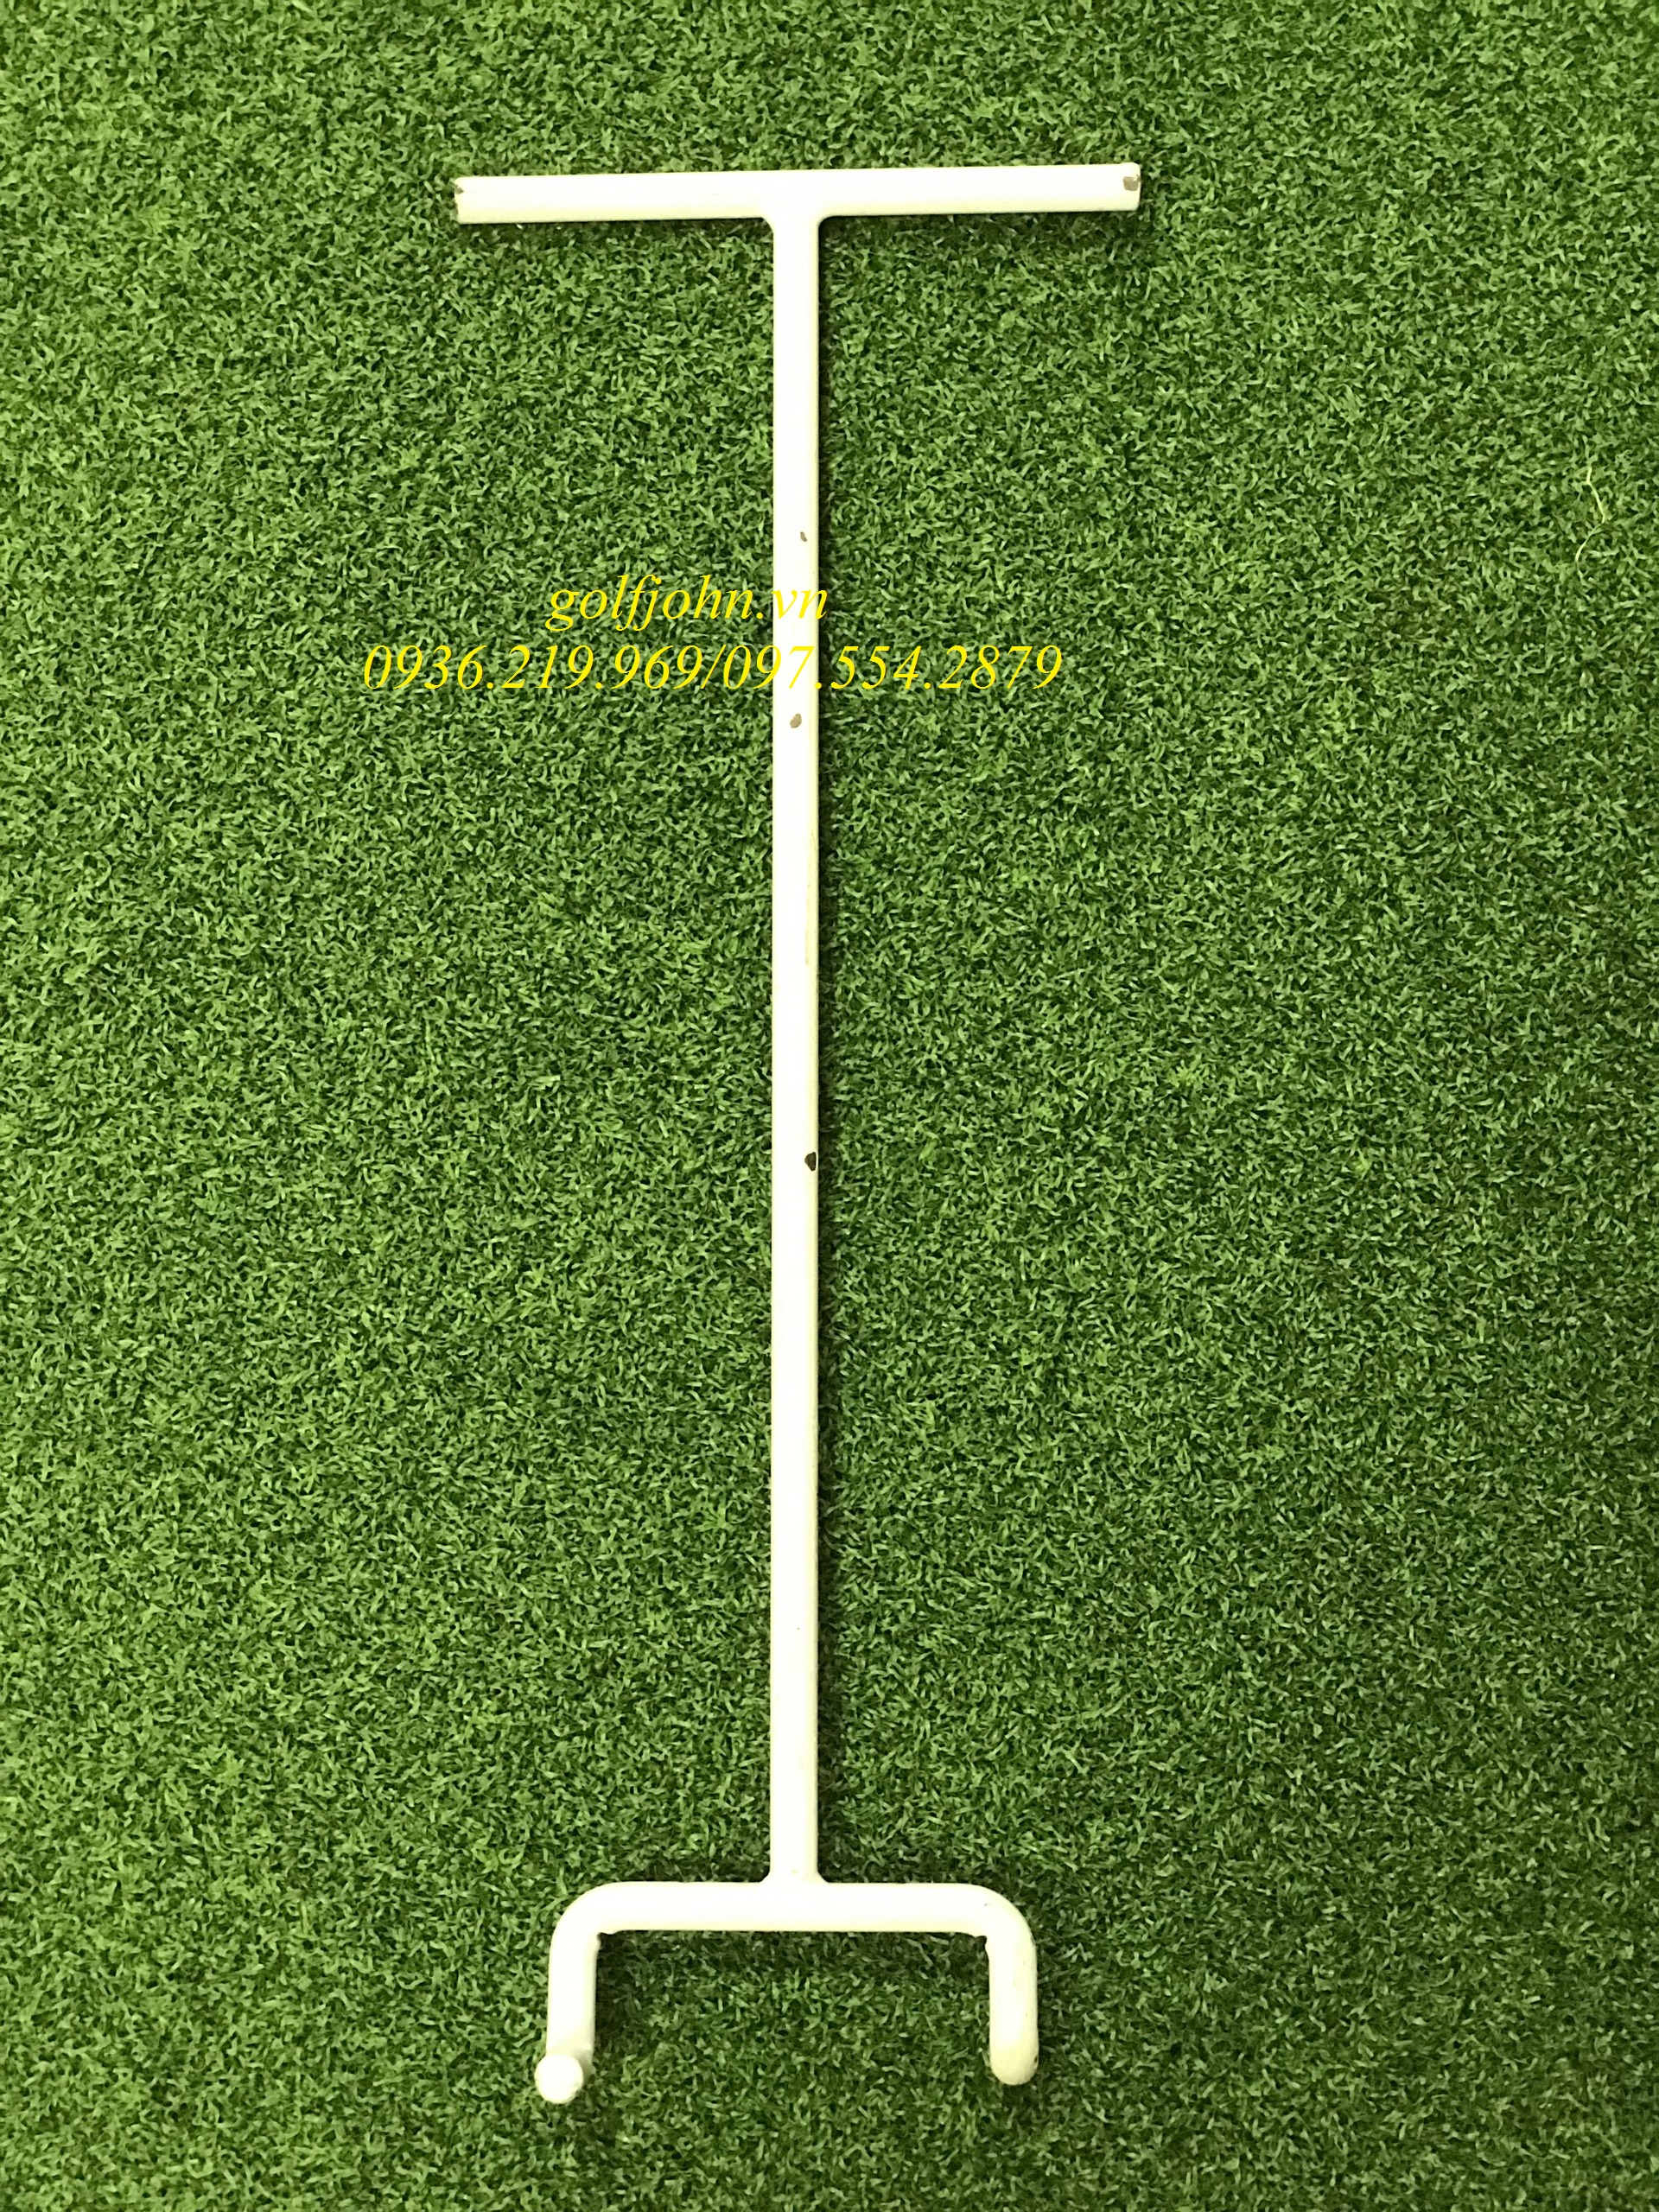 Gắp Lỗ Golf dùng cho sân golf chất liệu thép DVG